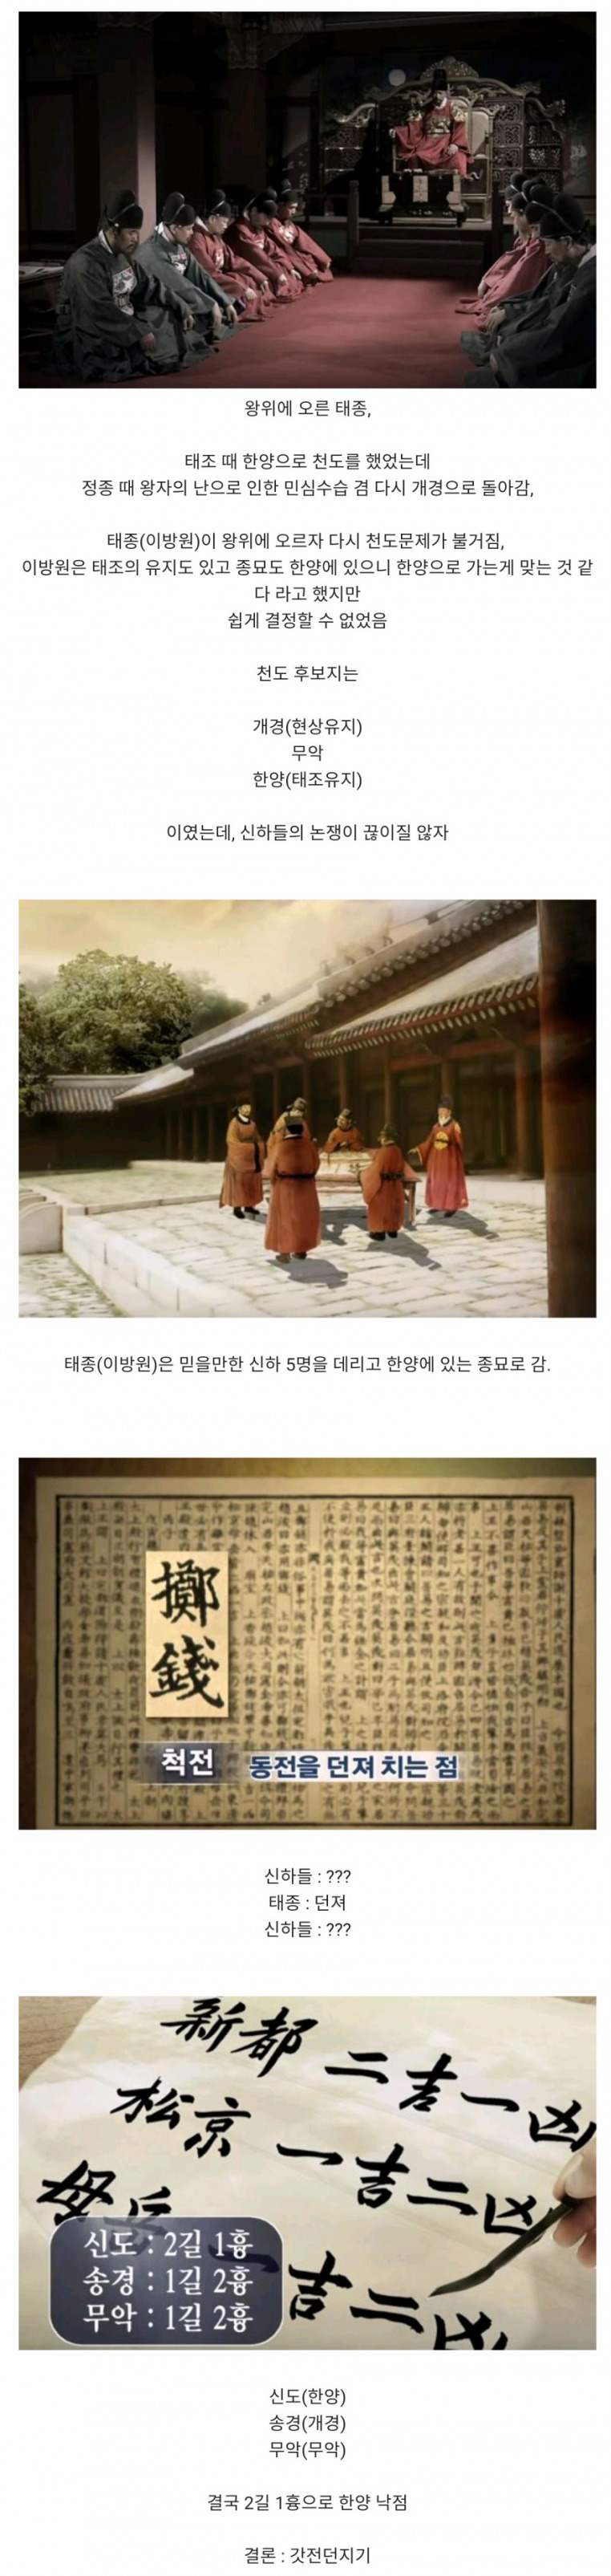 썸네일-조선시대 한양이 수도가 된 이유.jpg-이미지